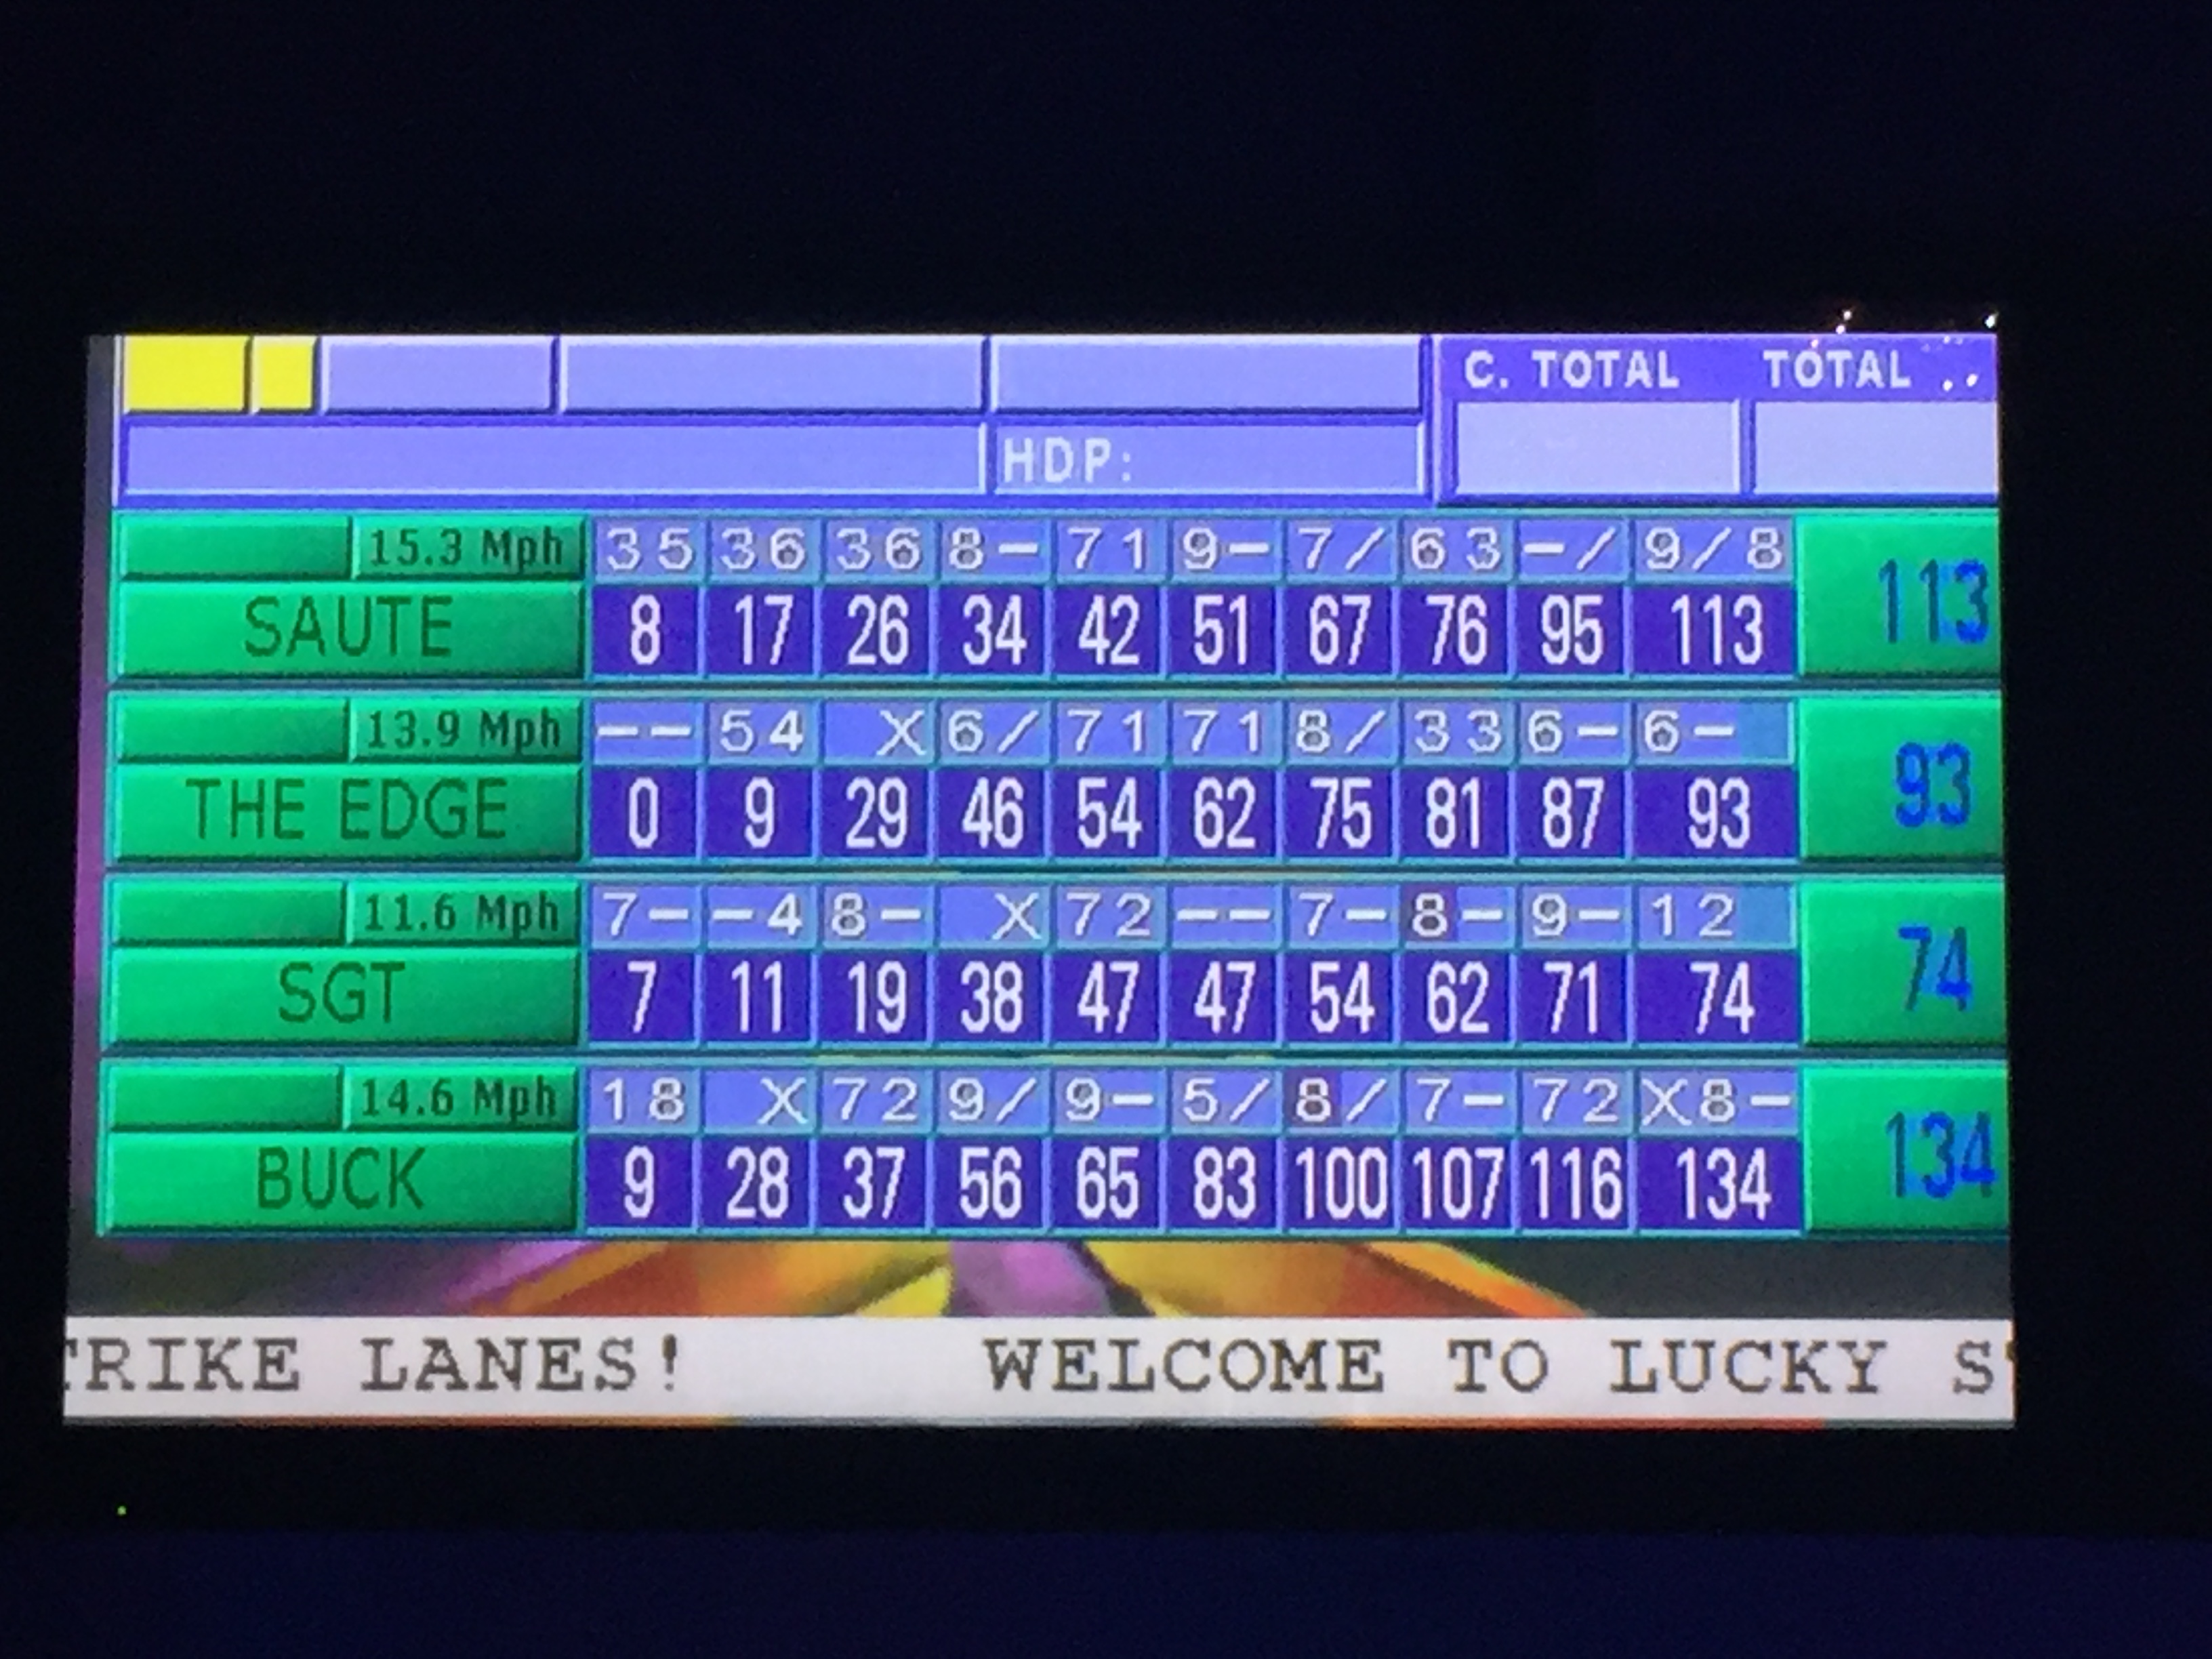 cmo-group-event-bowling-scoreboard-lisa-nirell